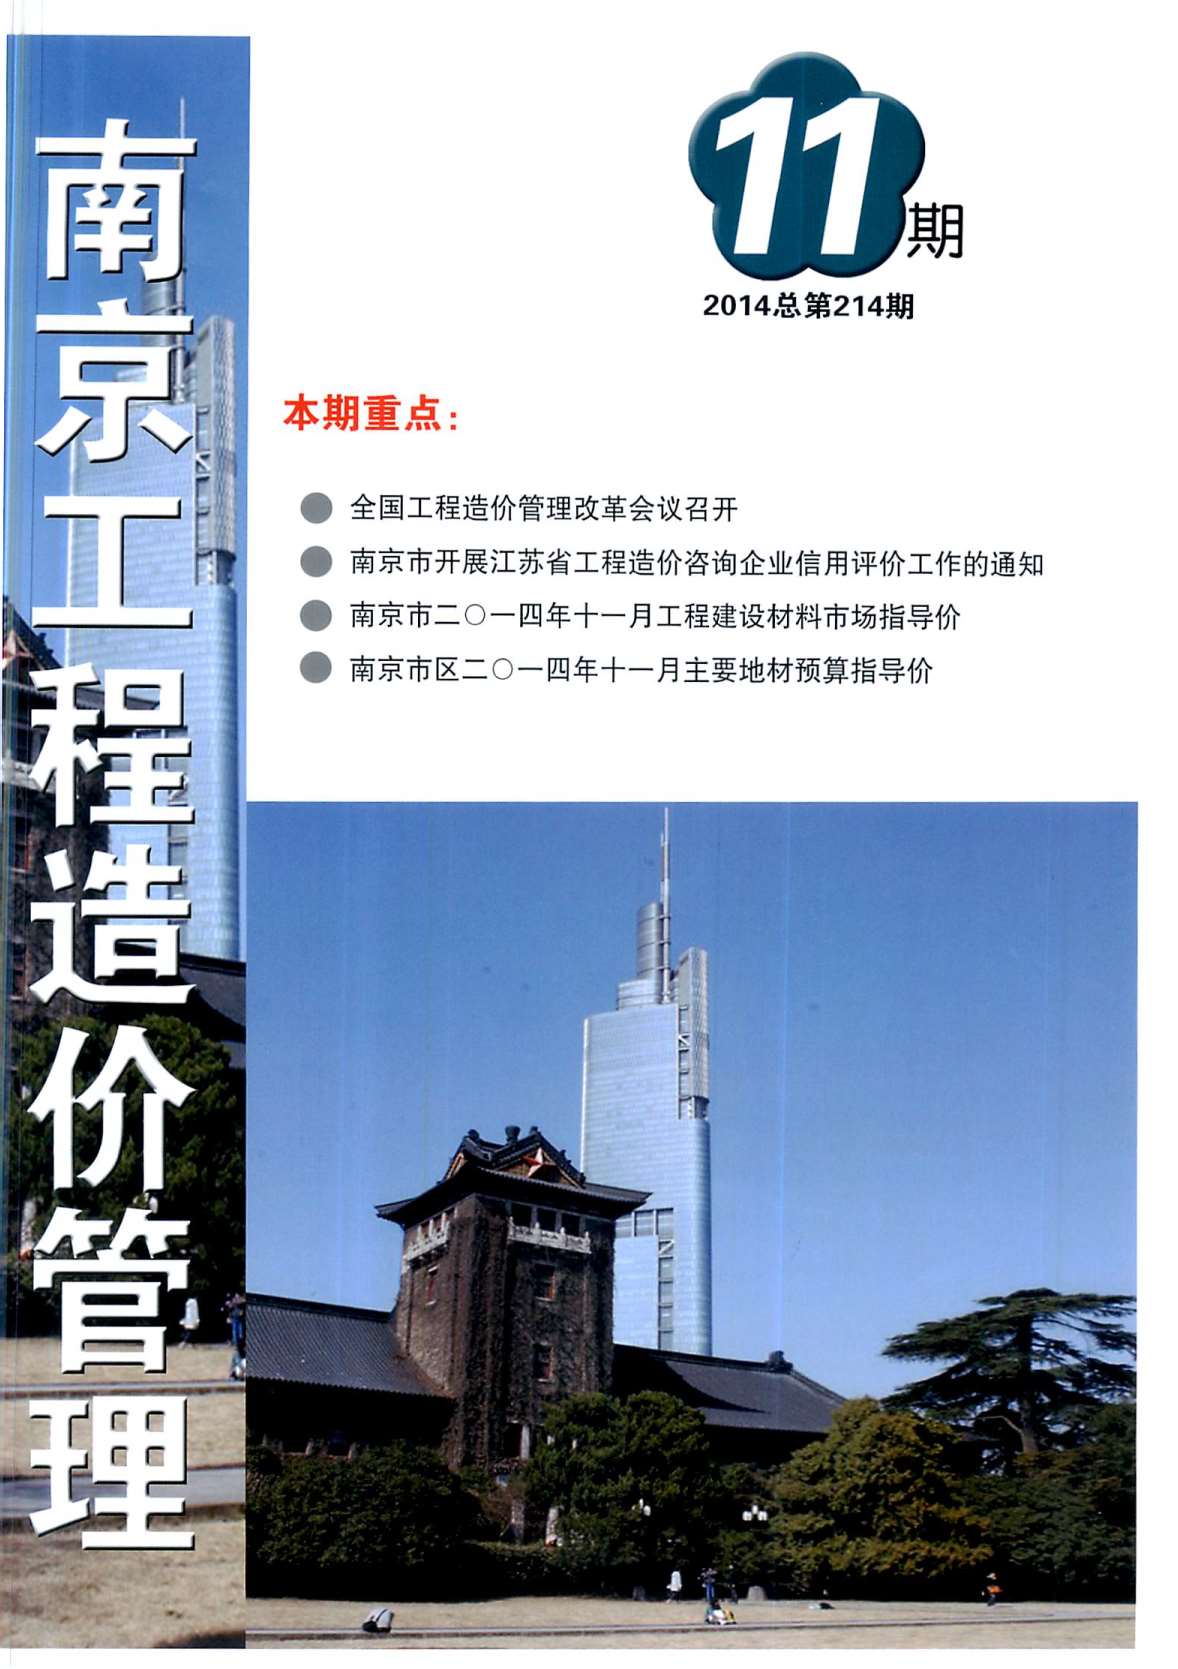 南京市2014年11月建设工程材料市场信息价格